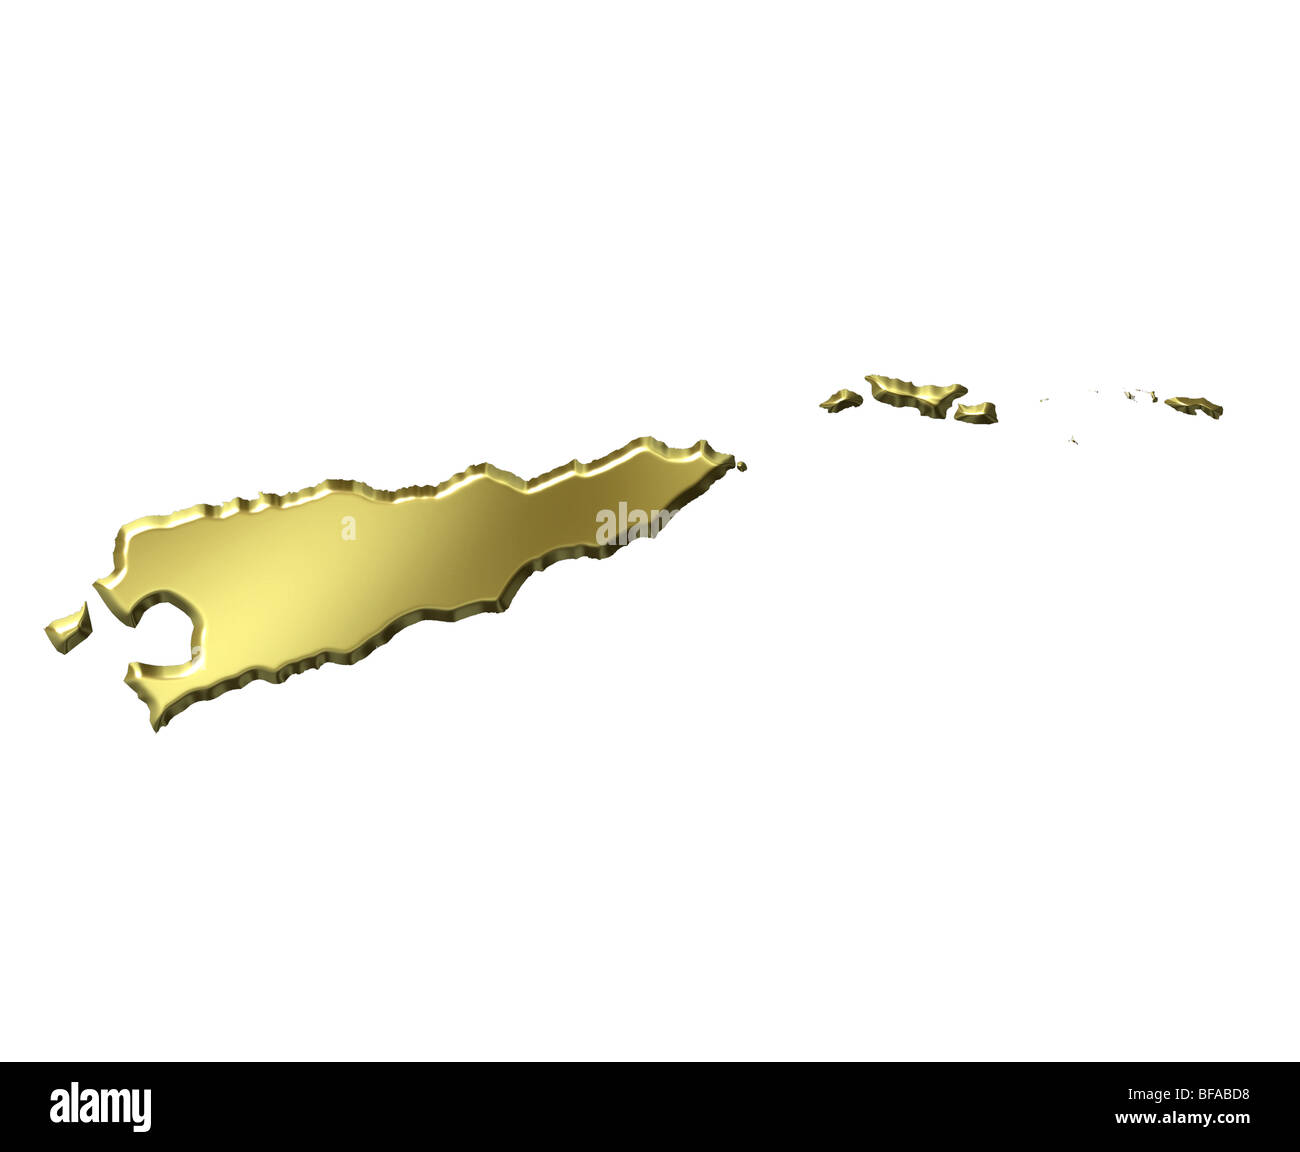 East Timor 3d golden map Stock Photo